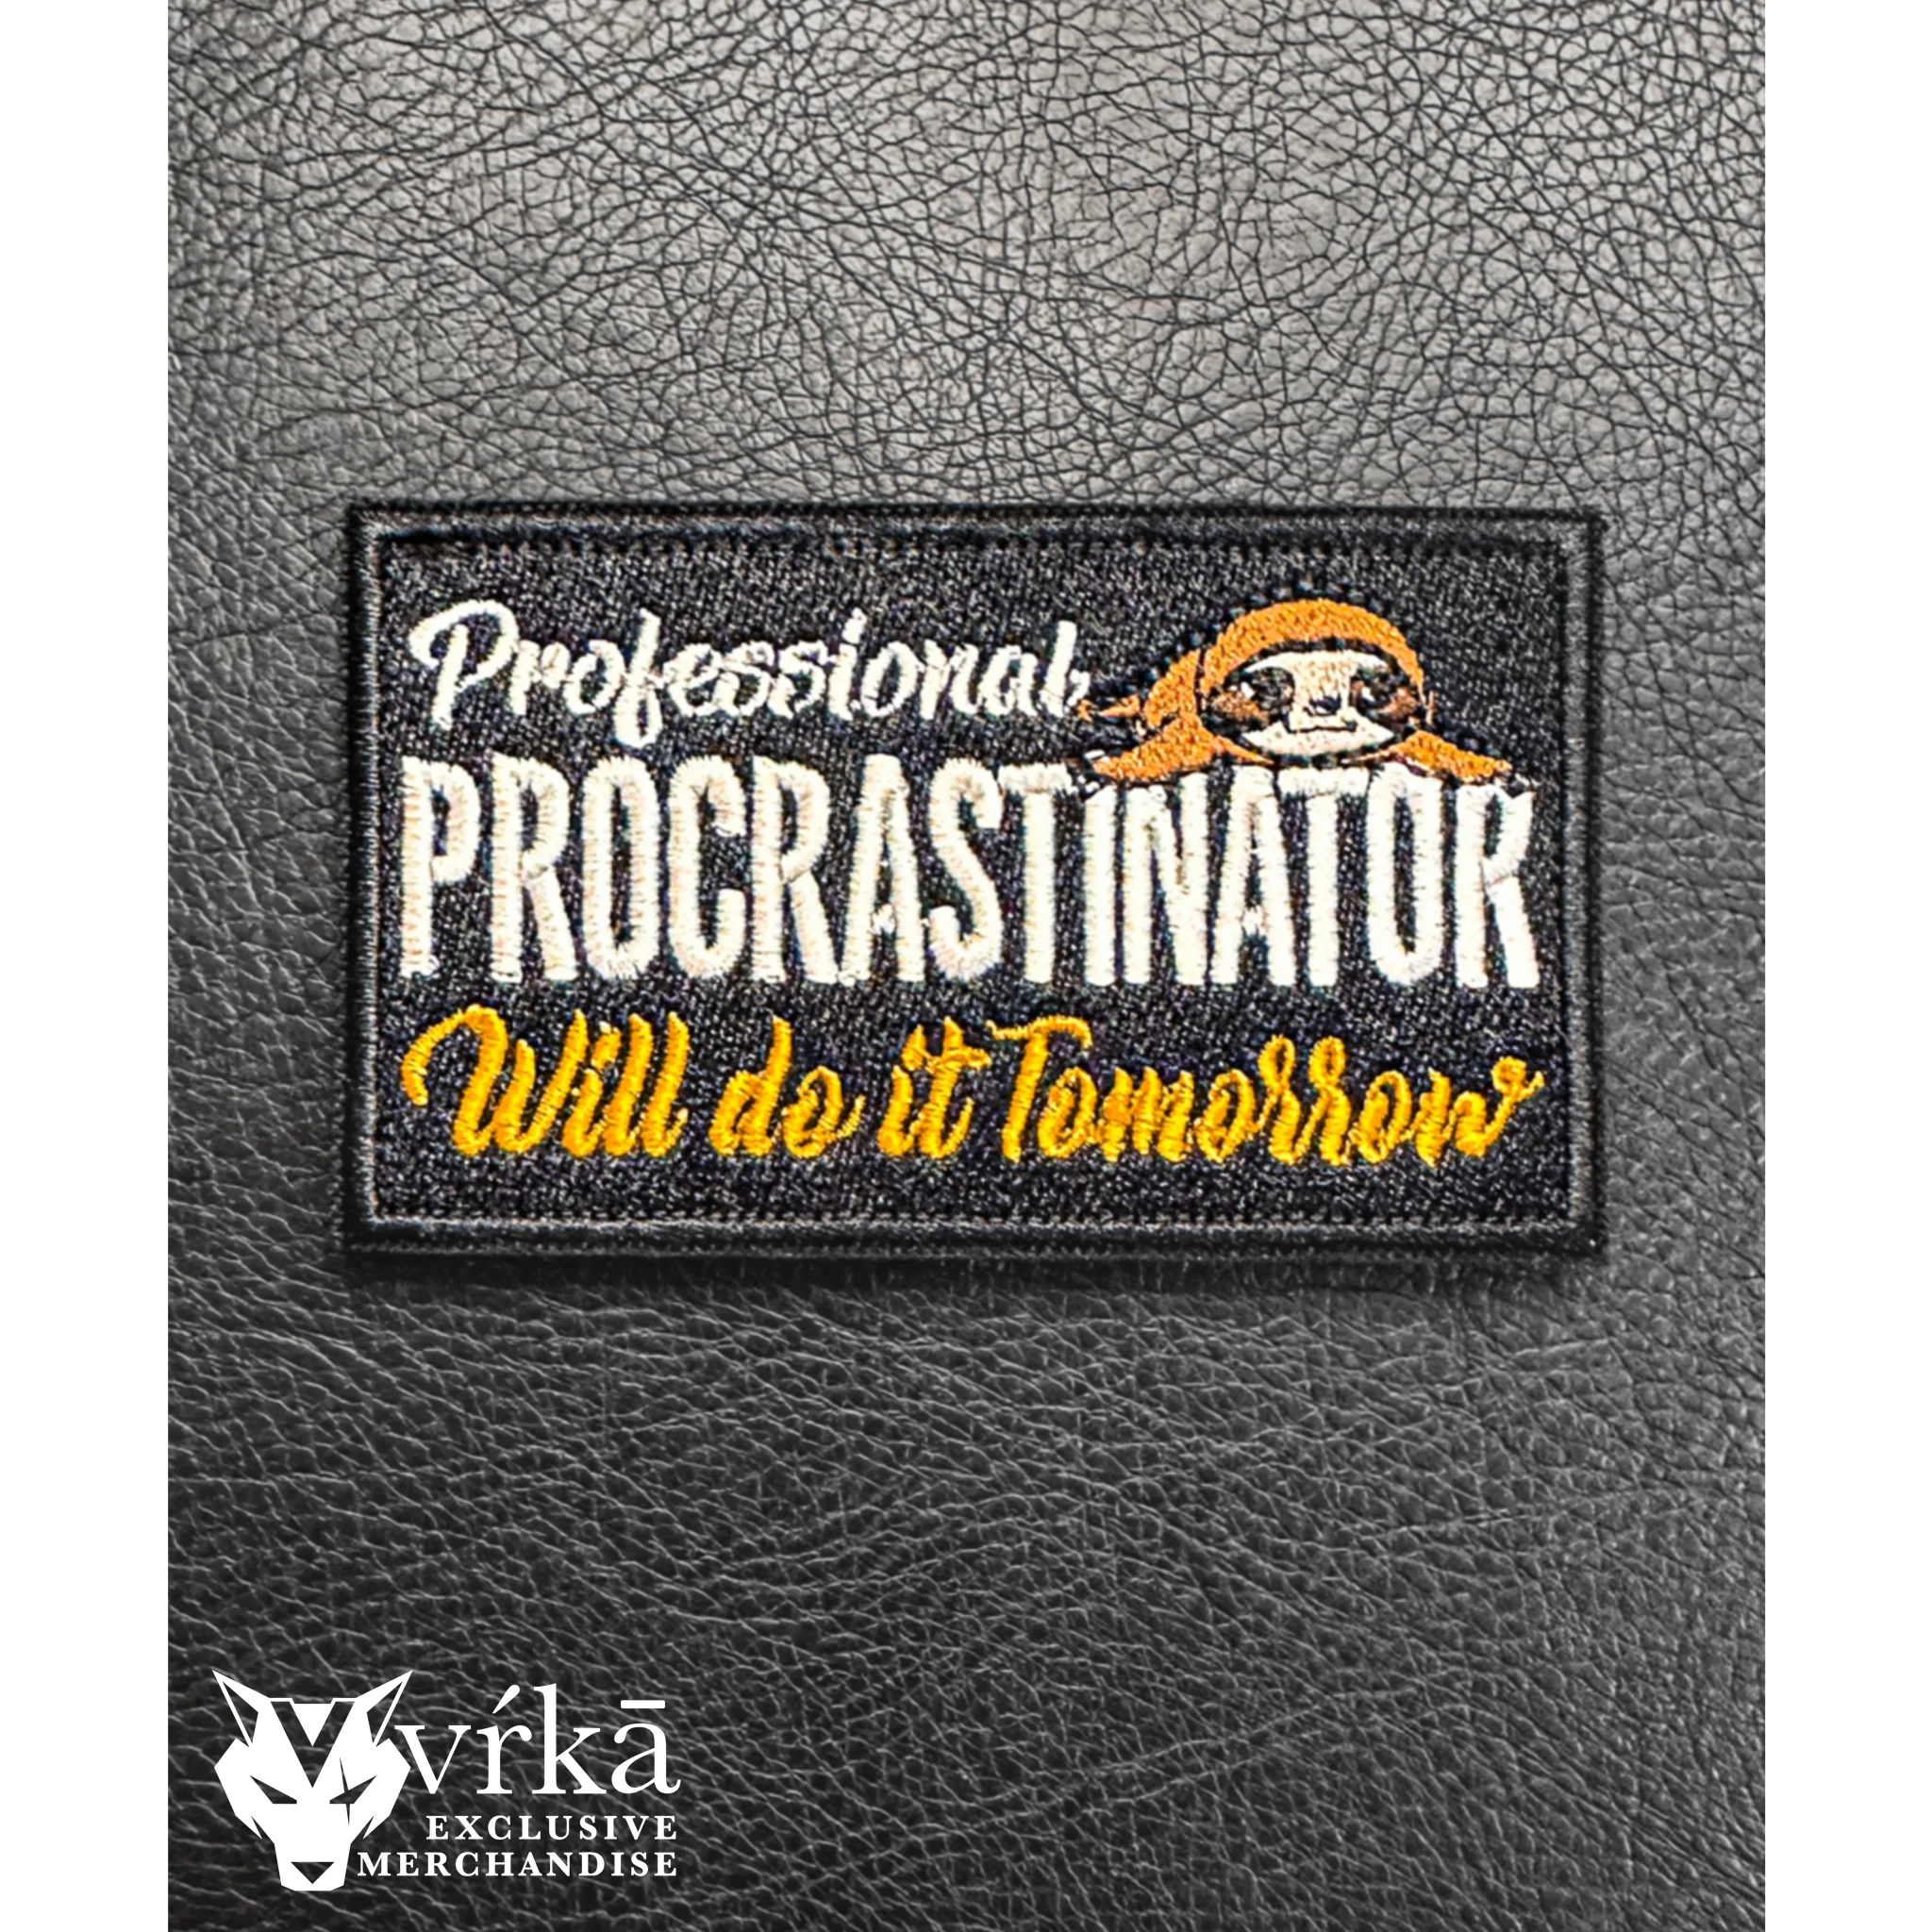 Featured image for “Professional Procrastinator”